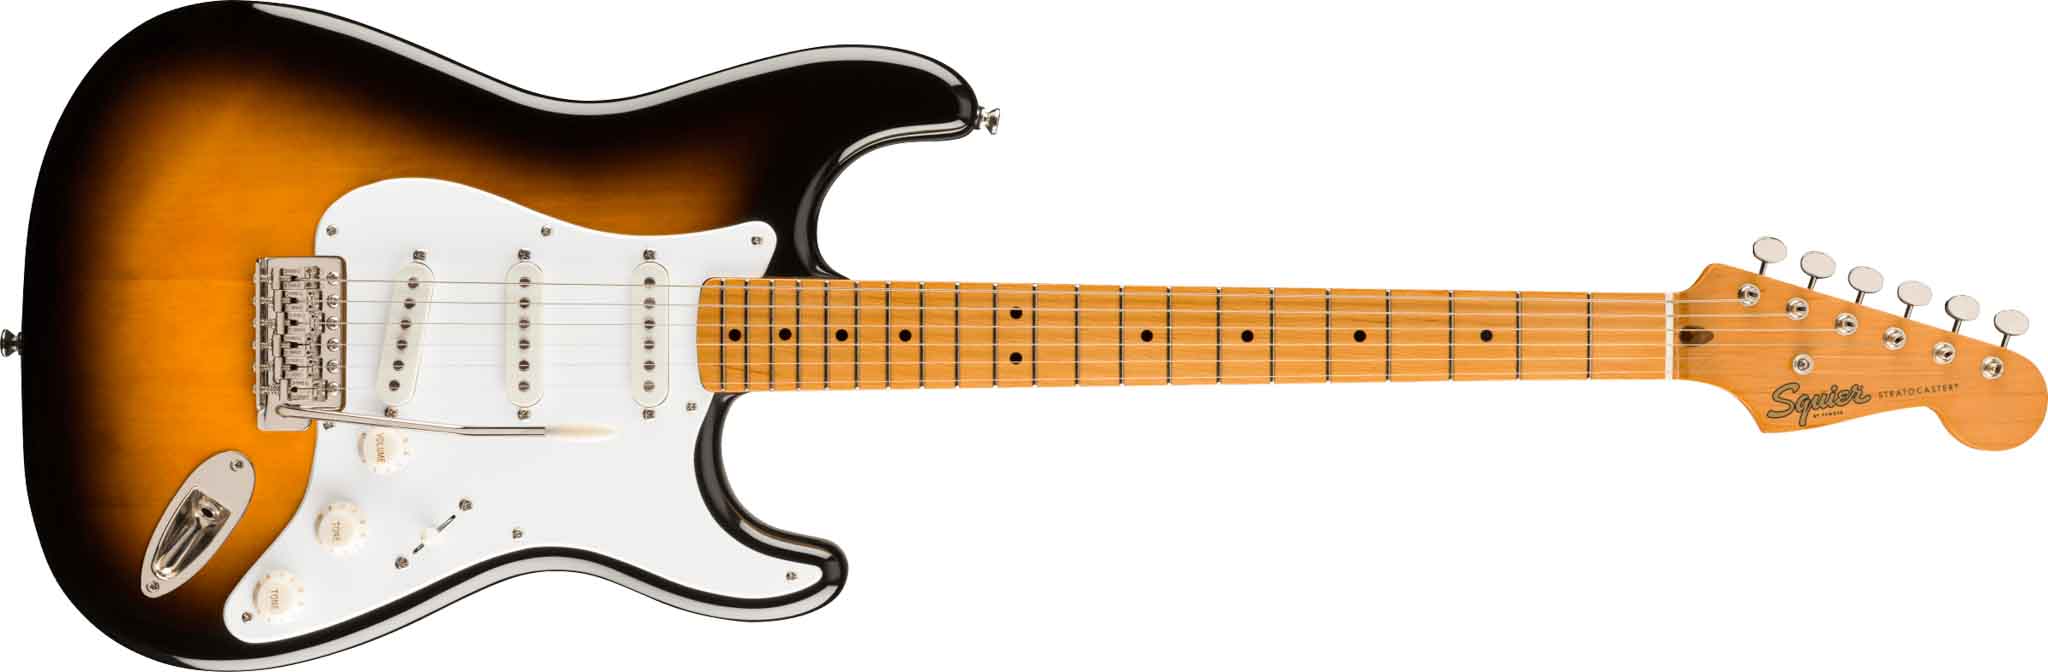 Fender Squier Classic Vibe '50s Stratocaster elektrisk gitar